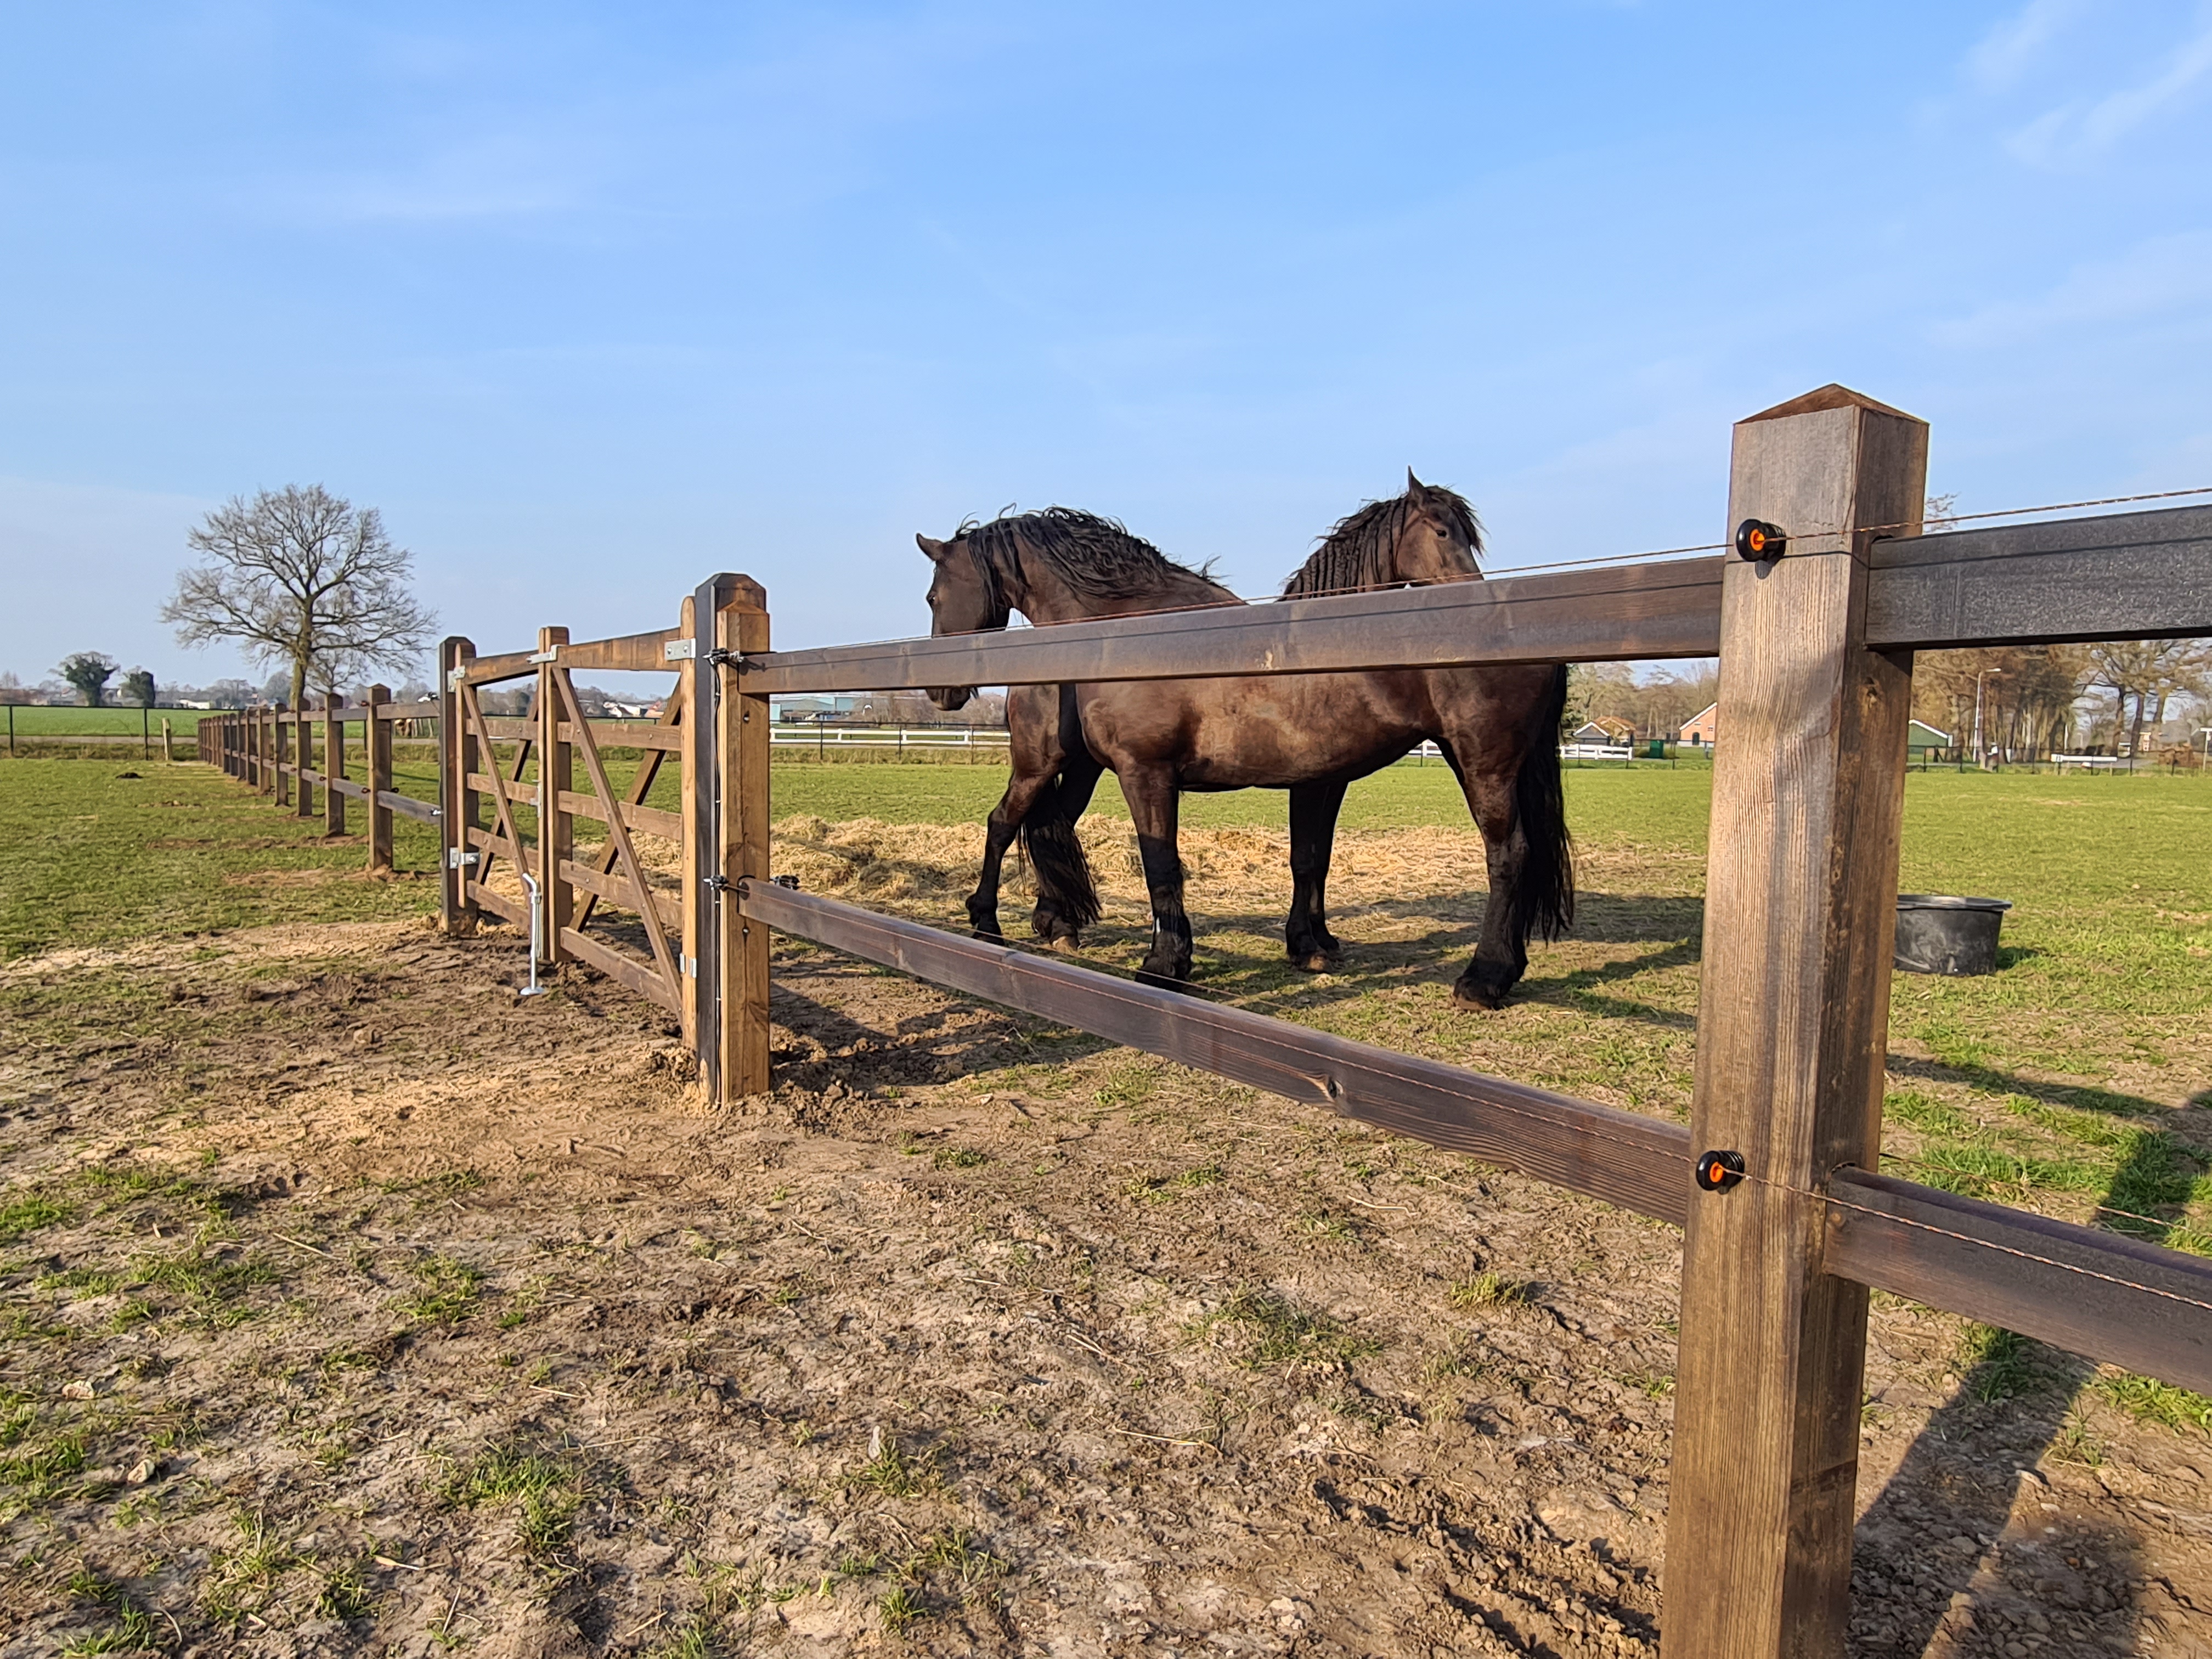 Et lægtehegn adskiller to hestefolde, men en trælåge tillader adgang mellem de to folde. To store heste står i nærheden af trælågen.